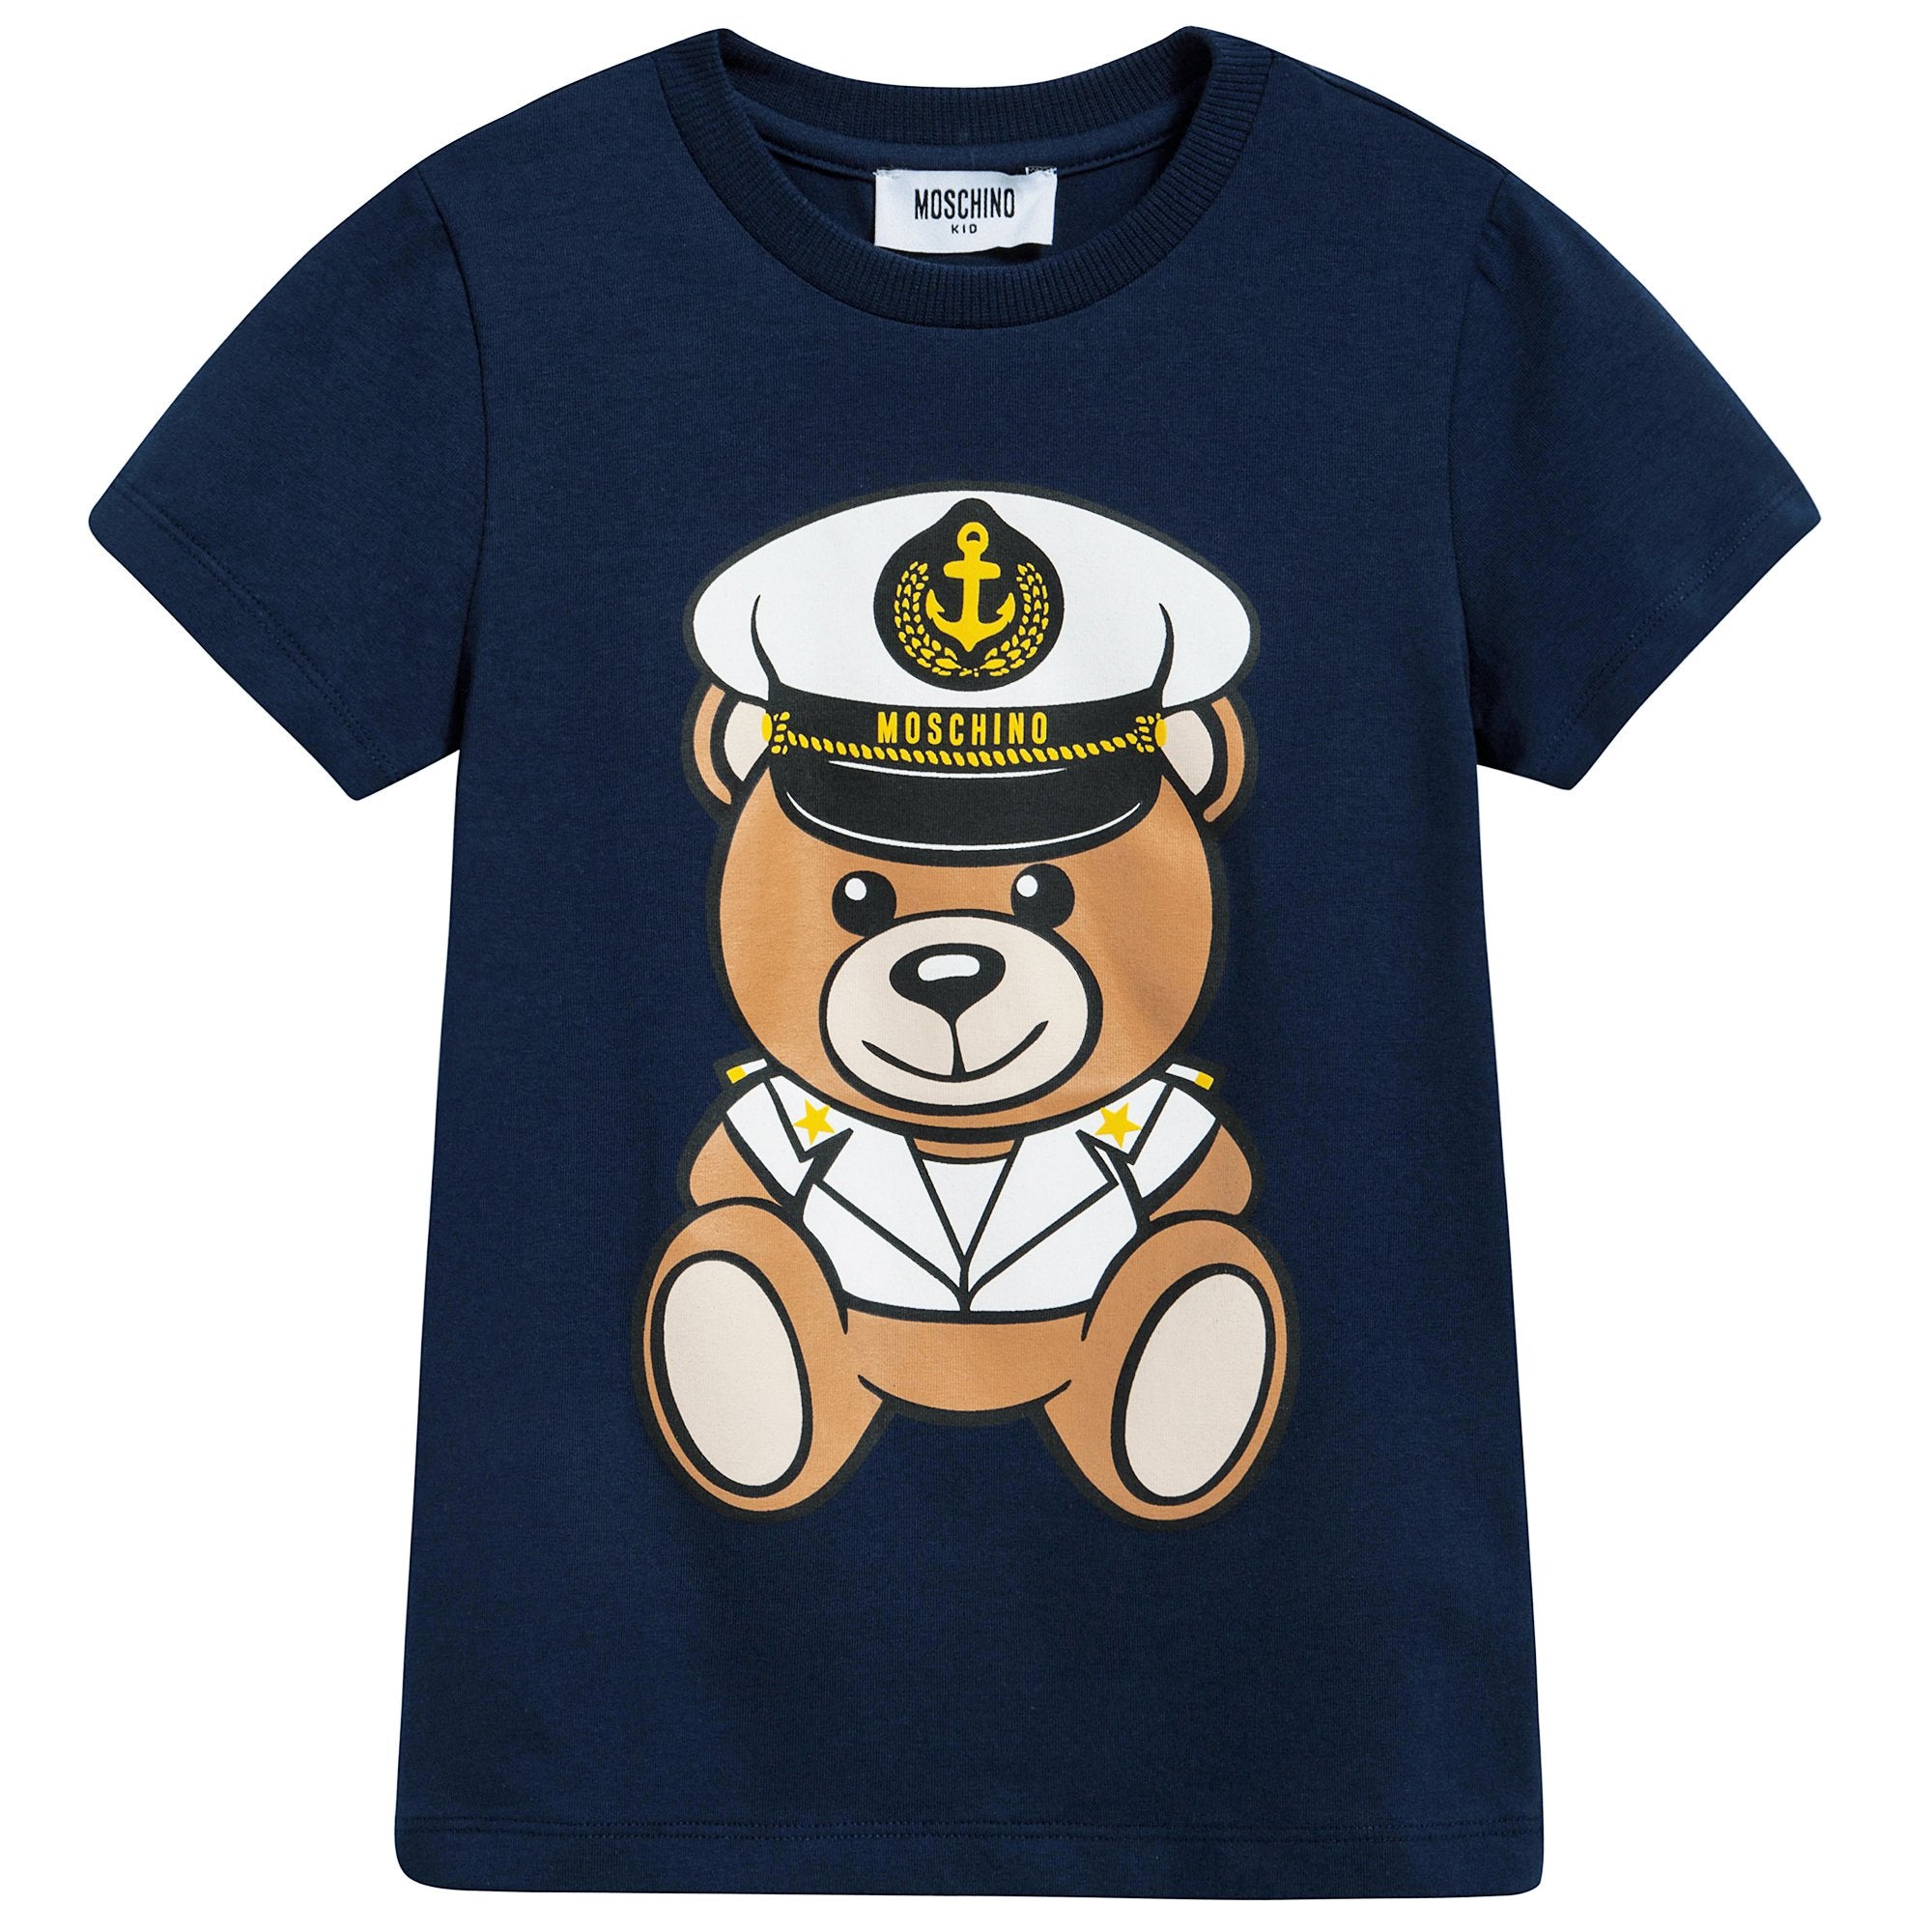 Girls Navy Blue Cotton Teddy Bear T-Shirt